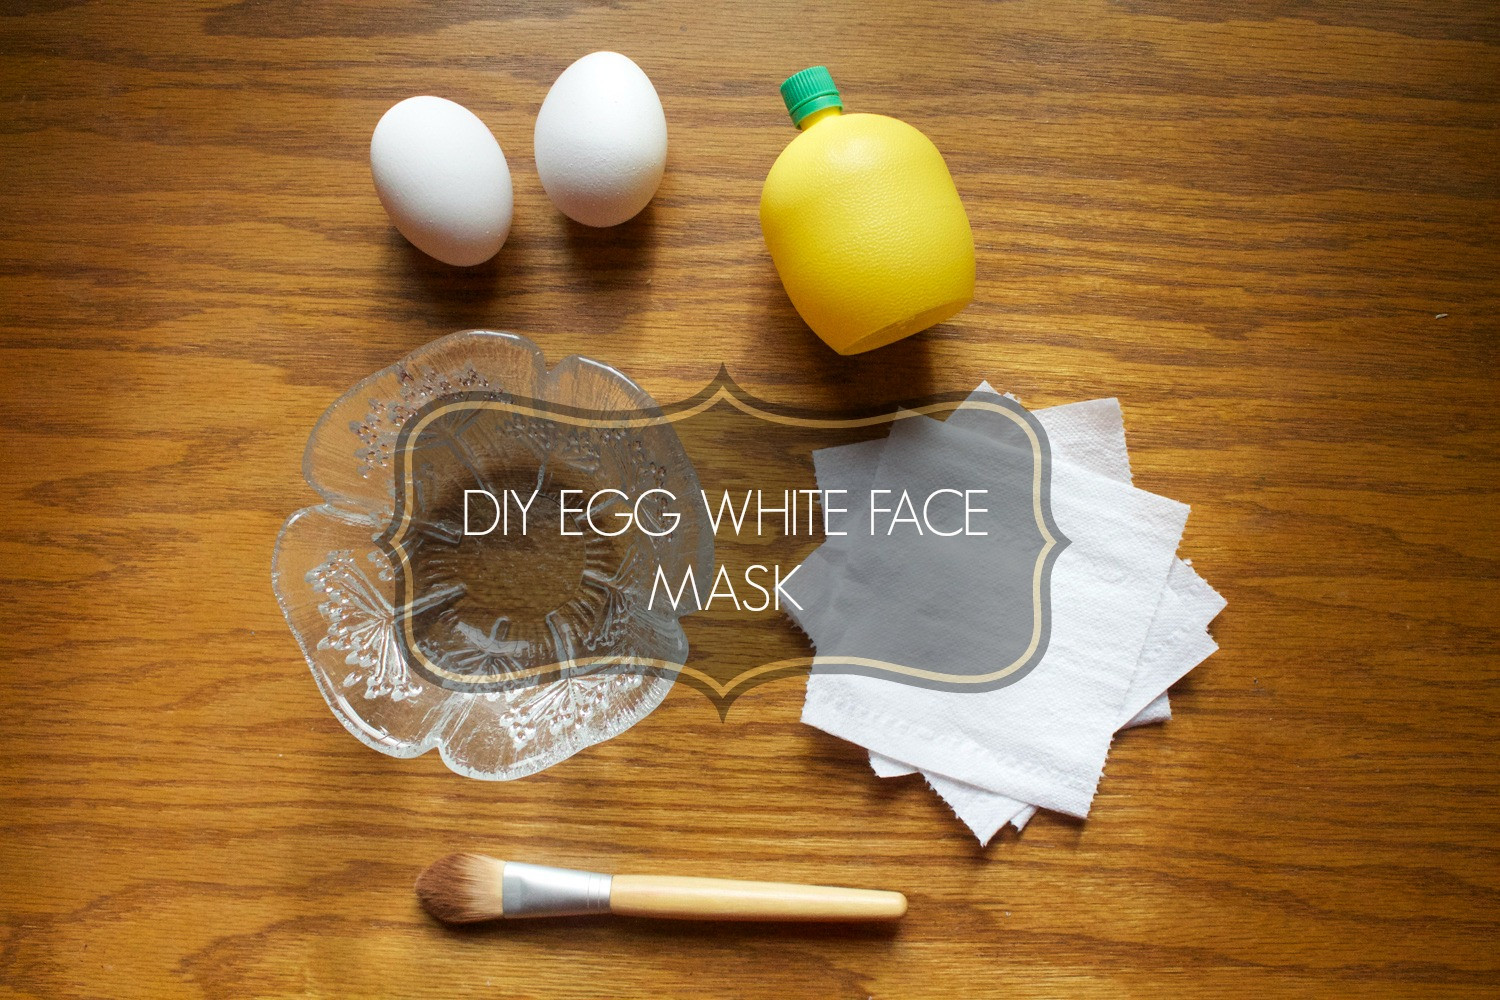 DIY Egg White Mask
 DIY EGG WHITE FACE MASK